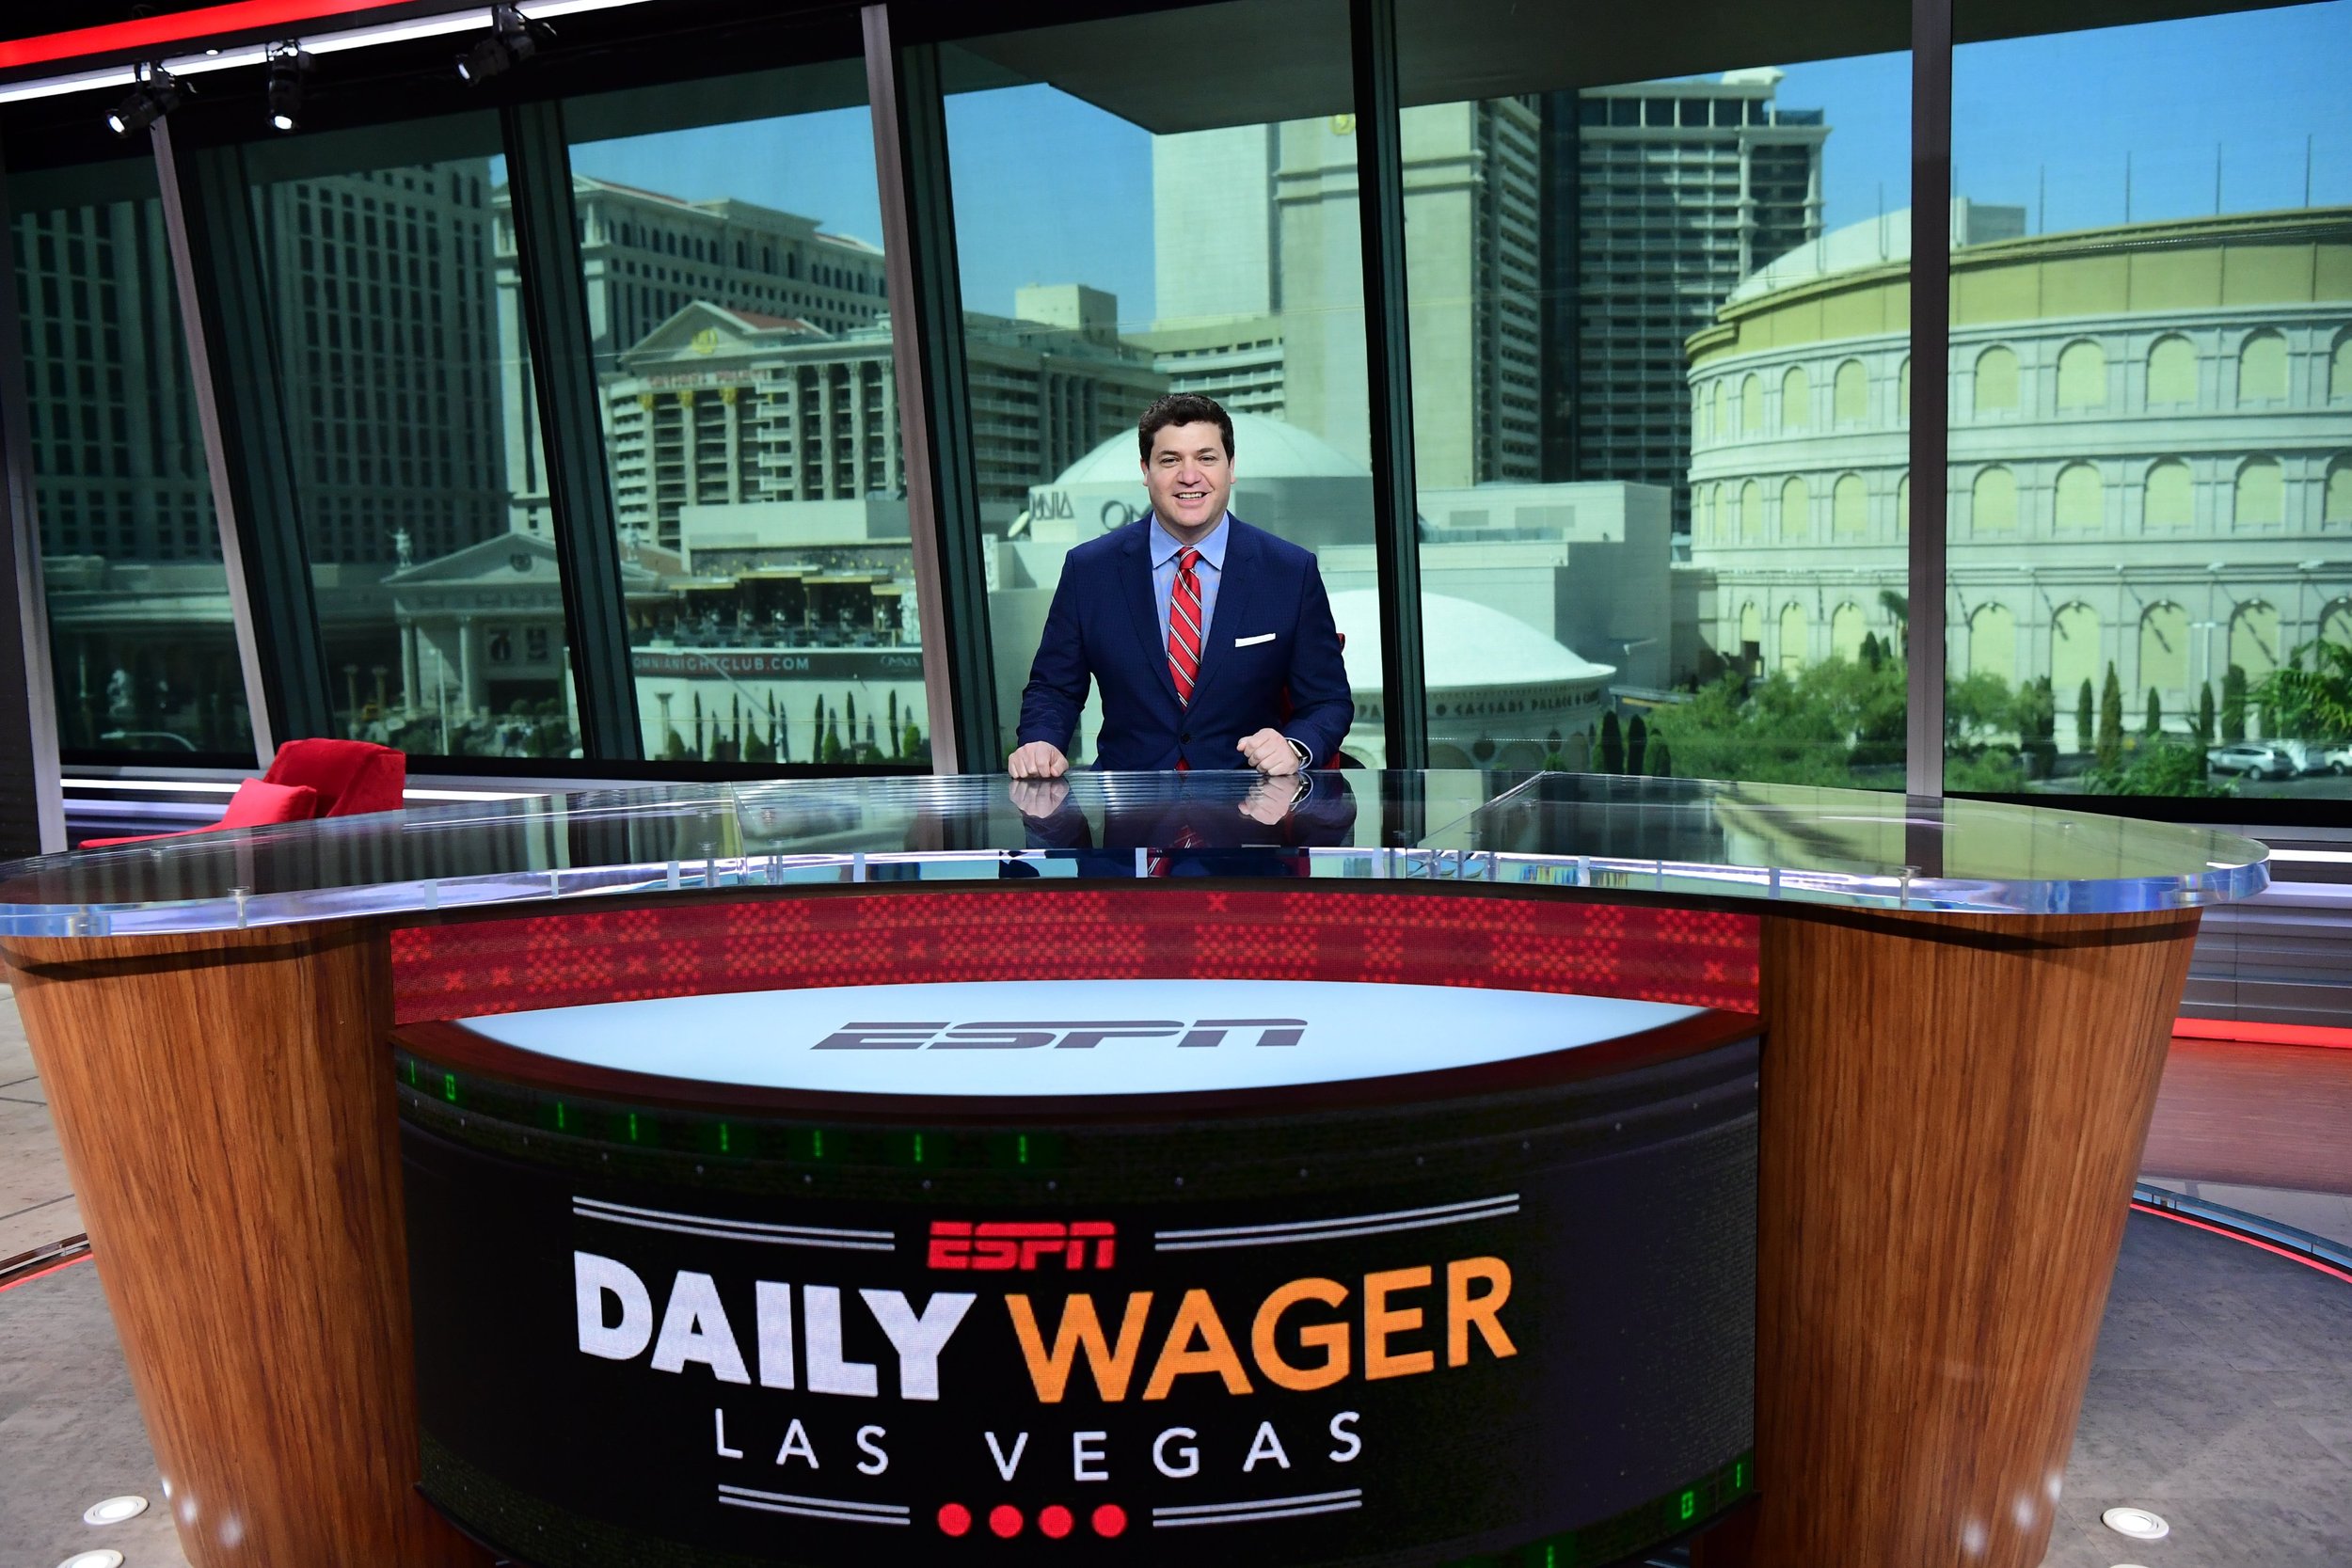 ESPN Vegas caesars dailywager  desk MPKscenic.jpg